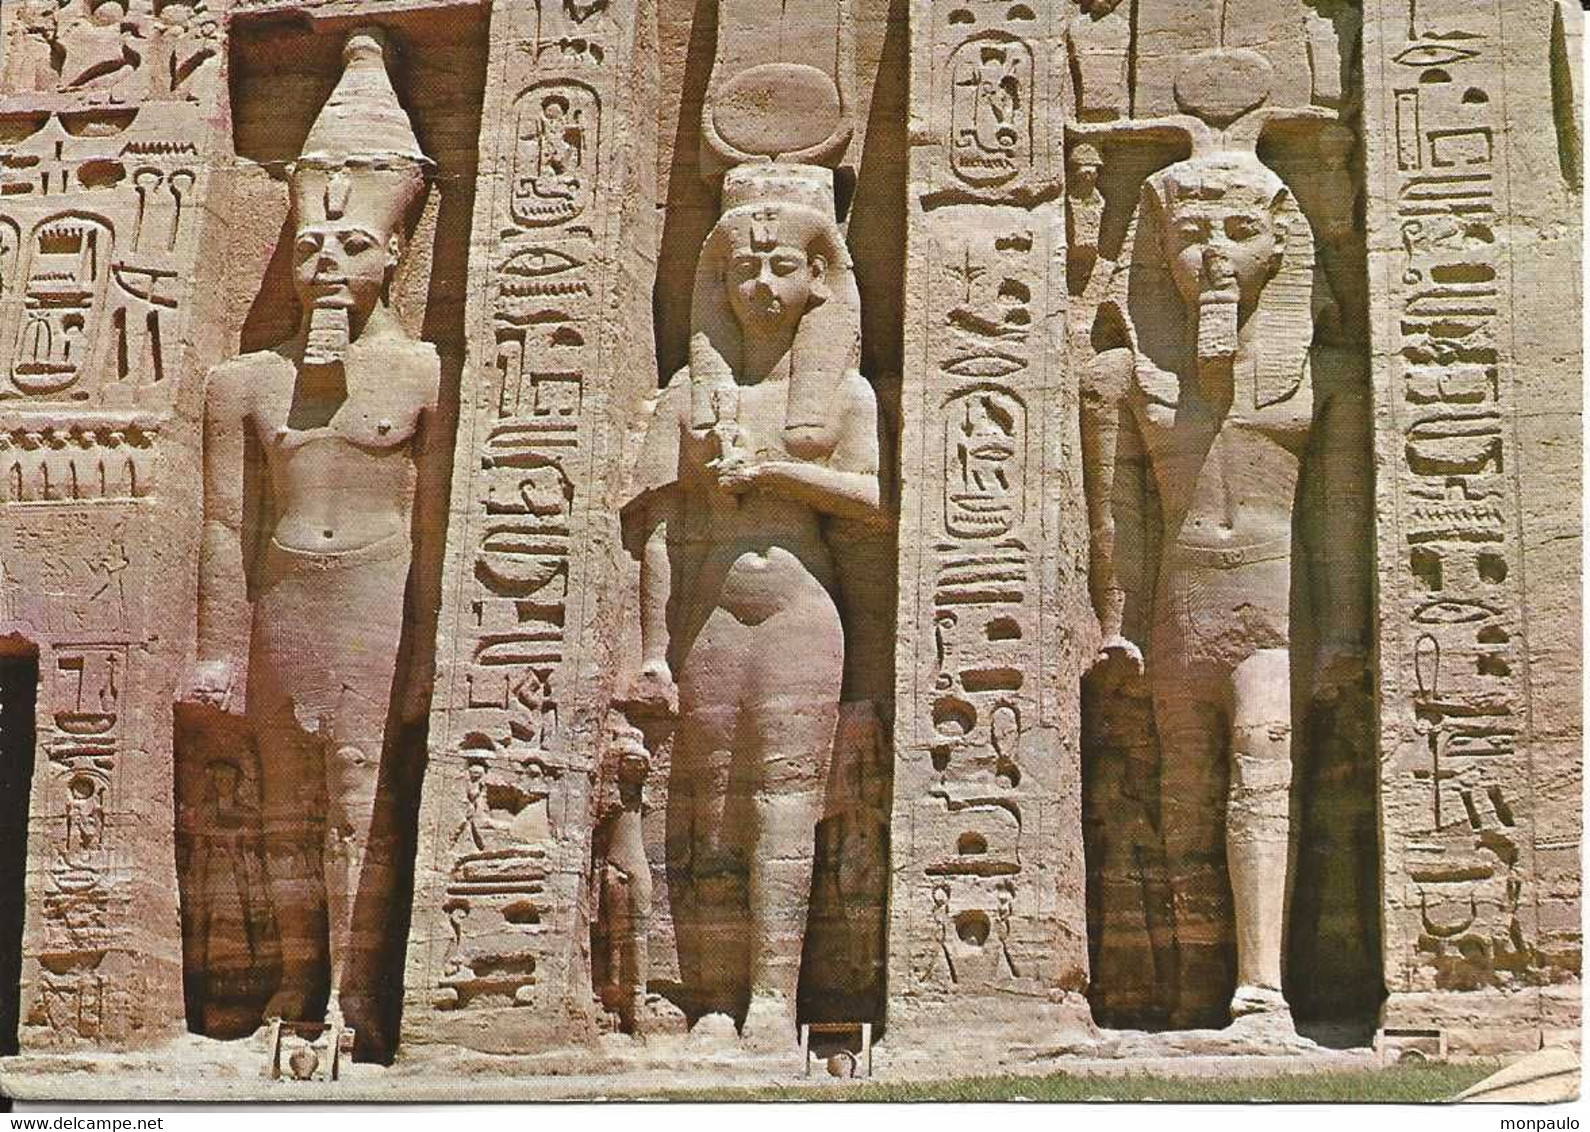 Afrique. CPM. Egypte. Temple D'Abou Simbel. Some Statues Of Abou Simbel - Temples D'Abou Simbel